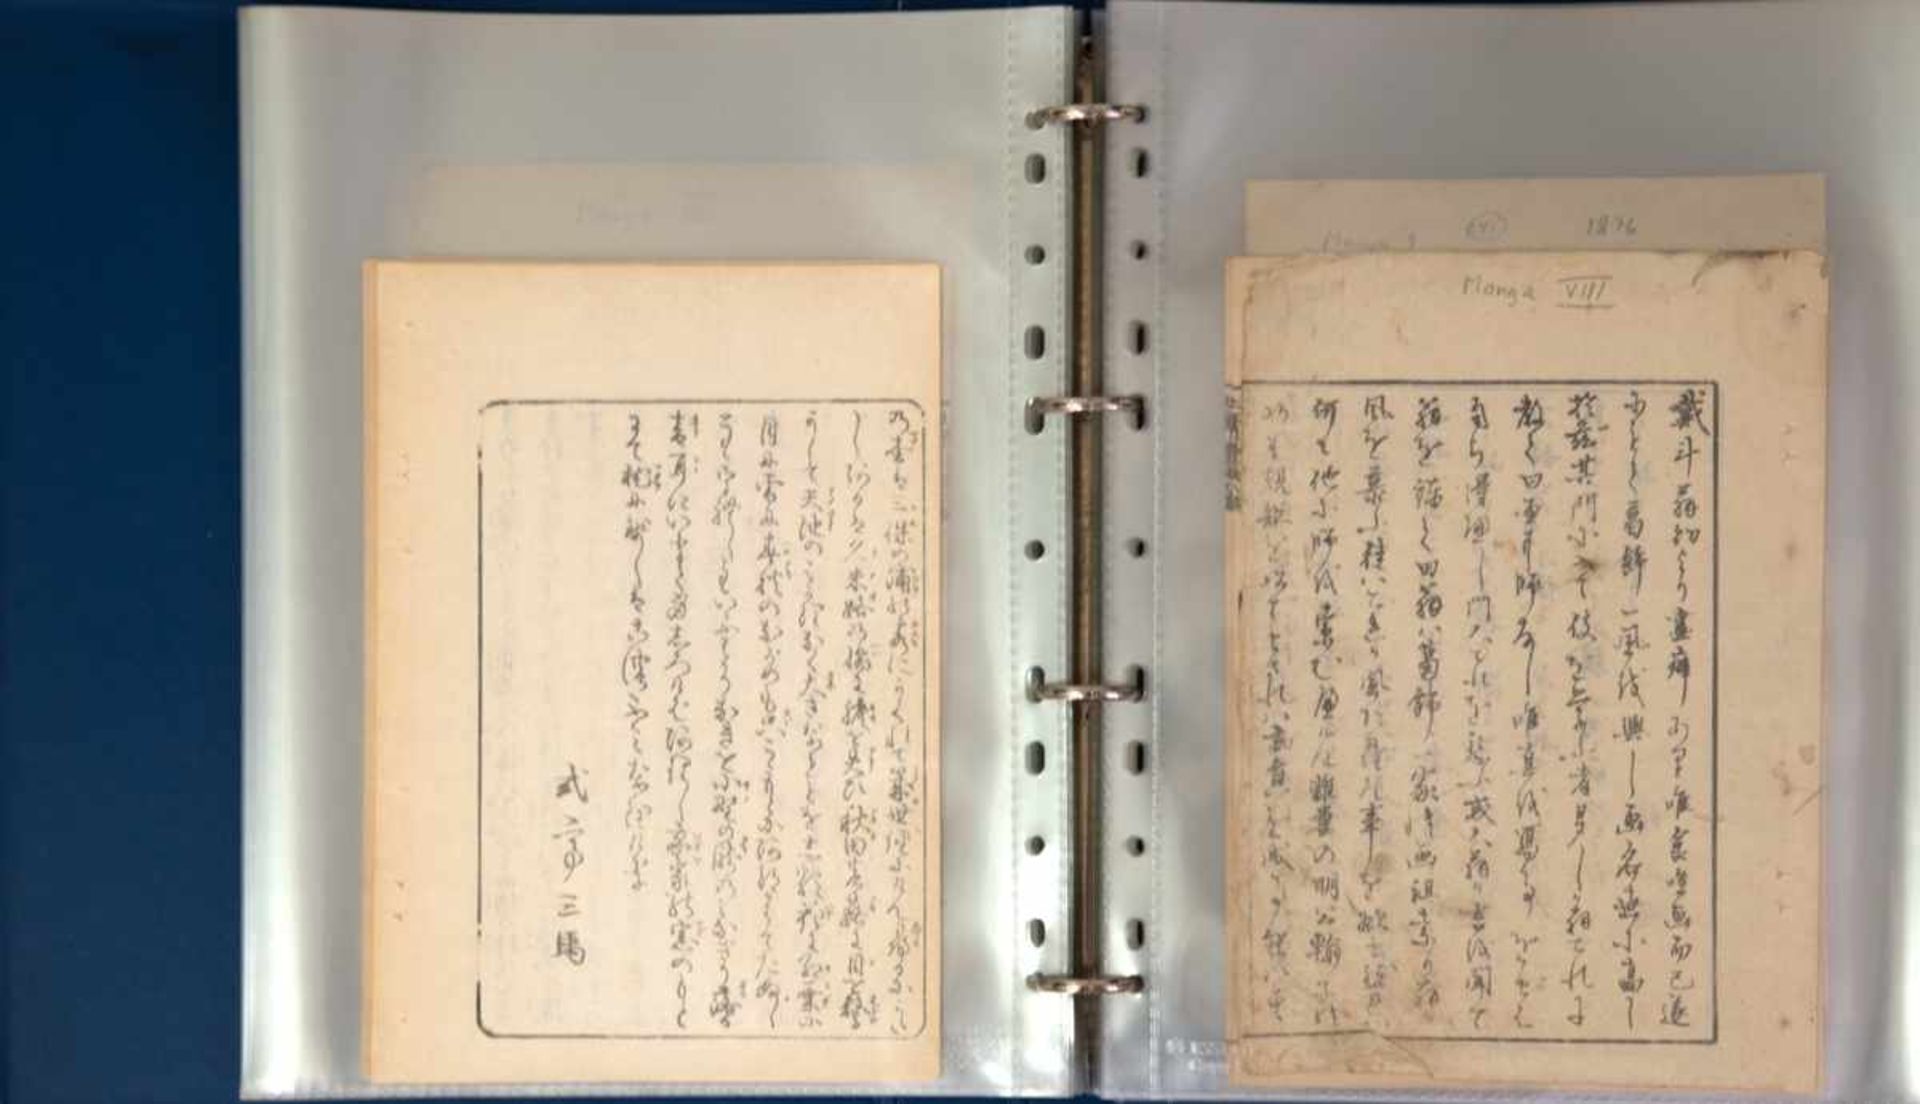 Mappe mit Sammlung japanischer Drucksachen, teilweise handschriftl. bez. Hokusai Mangwa,